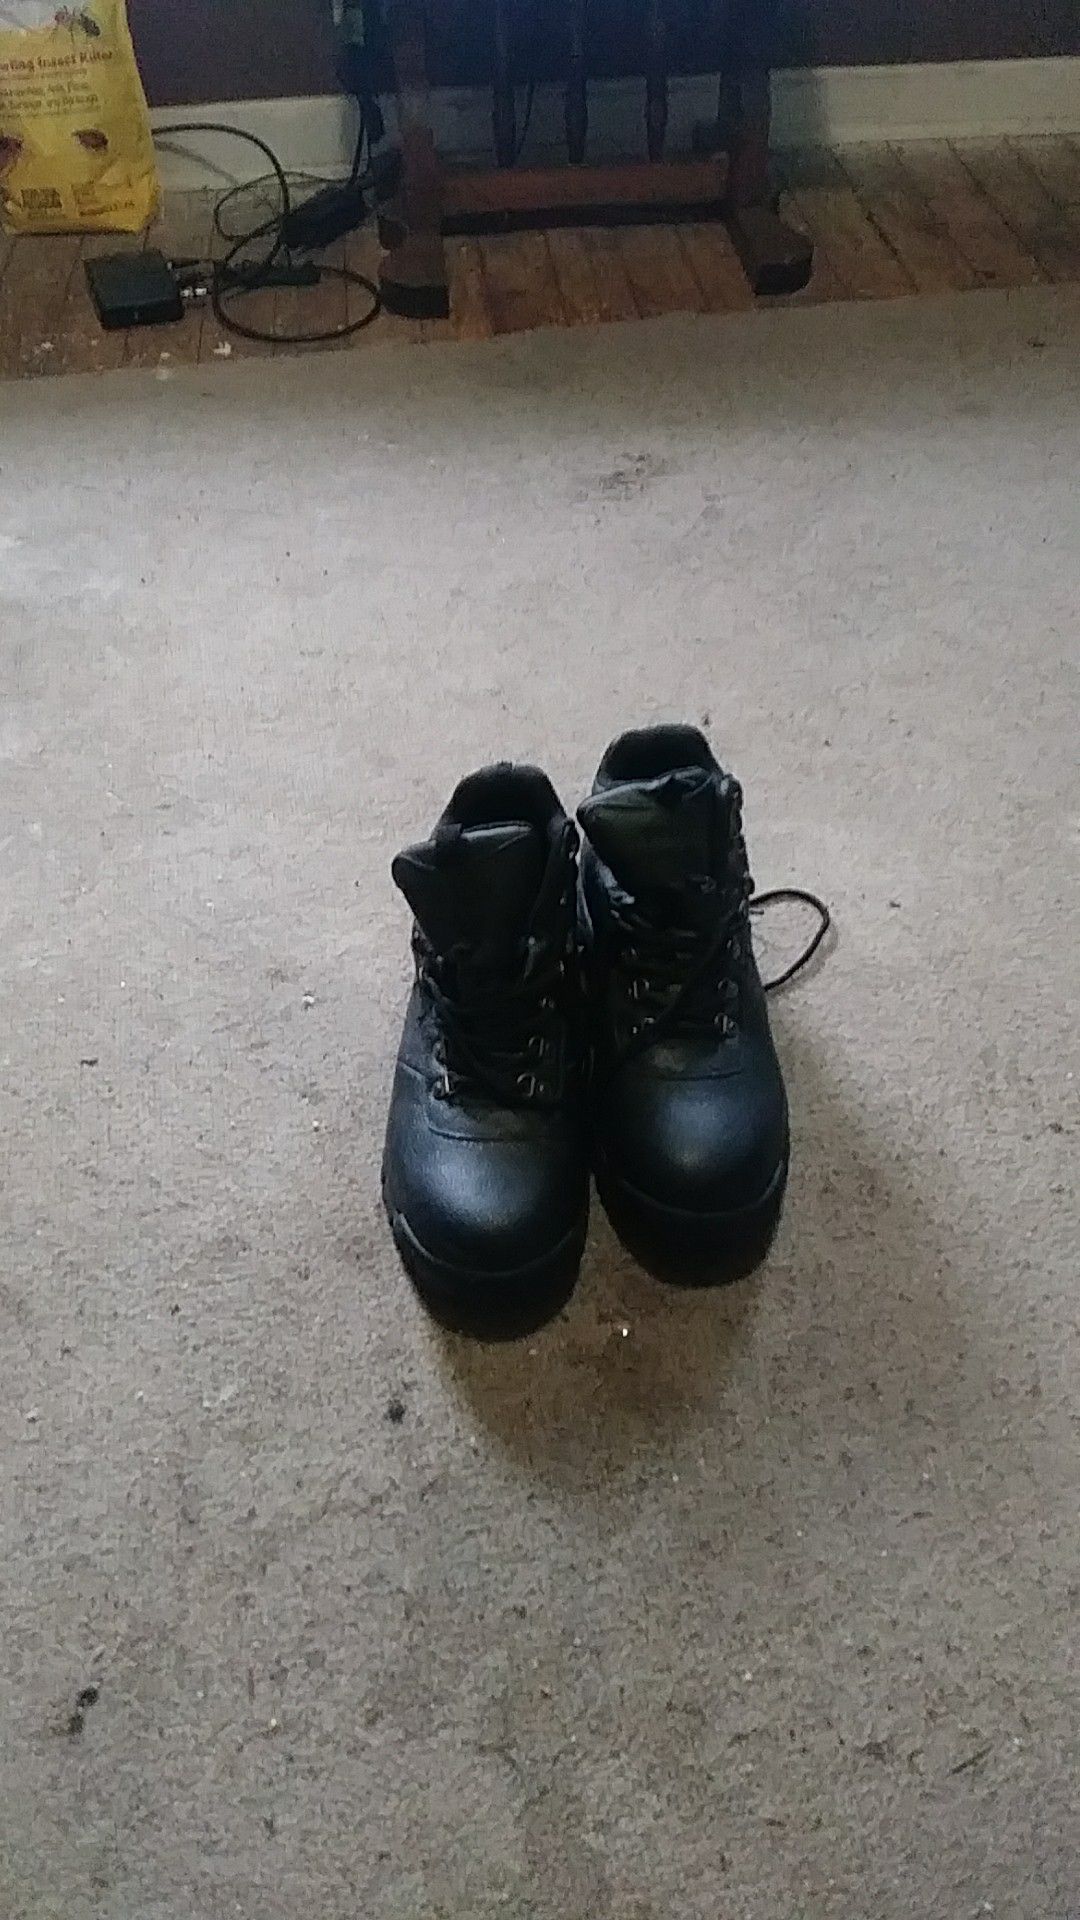 Work boots waterproof